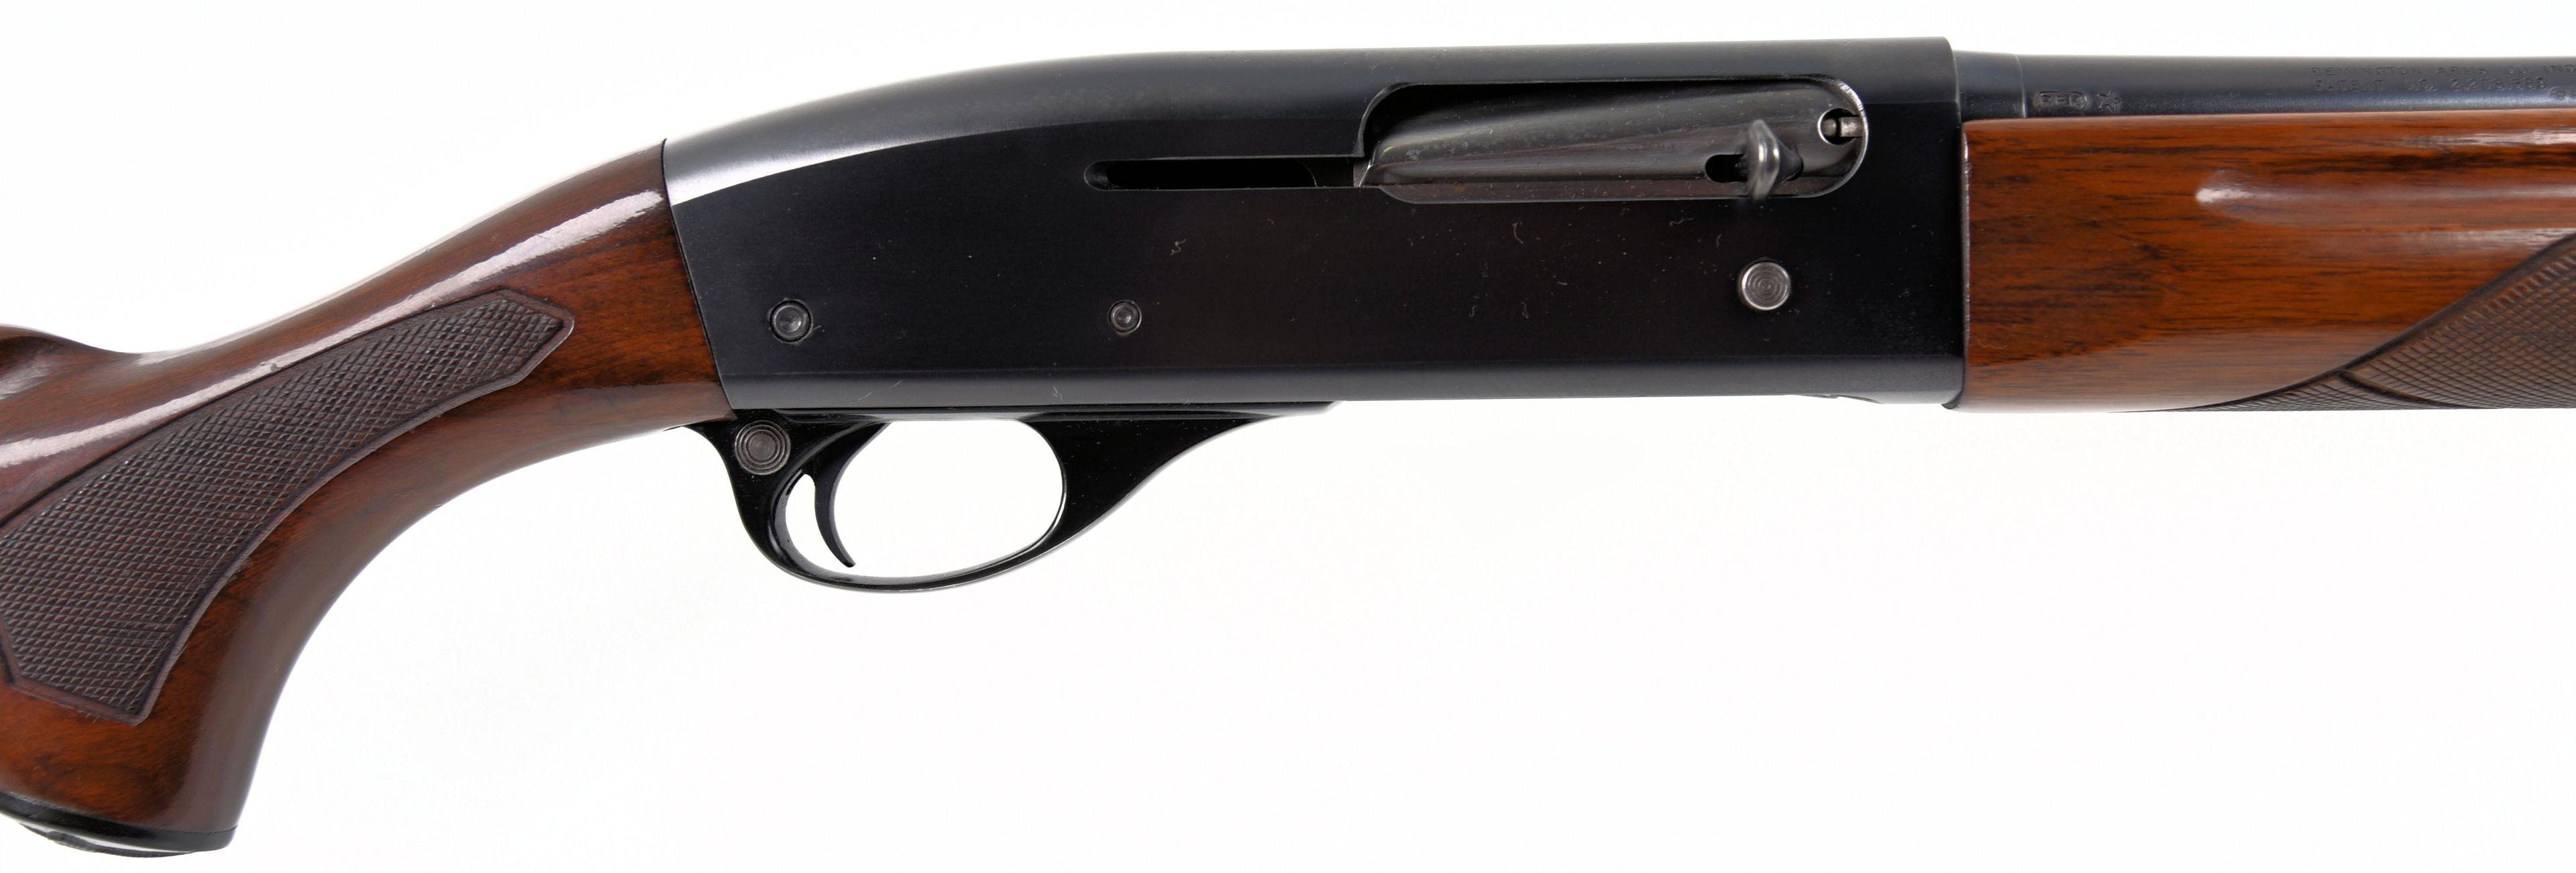 Remington Arms Co. Mdl 11-48 Semi Auto Shotgun